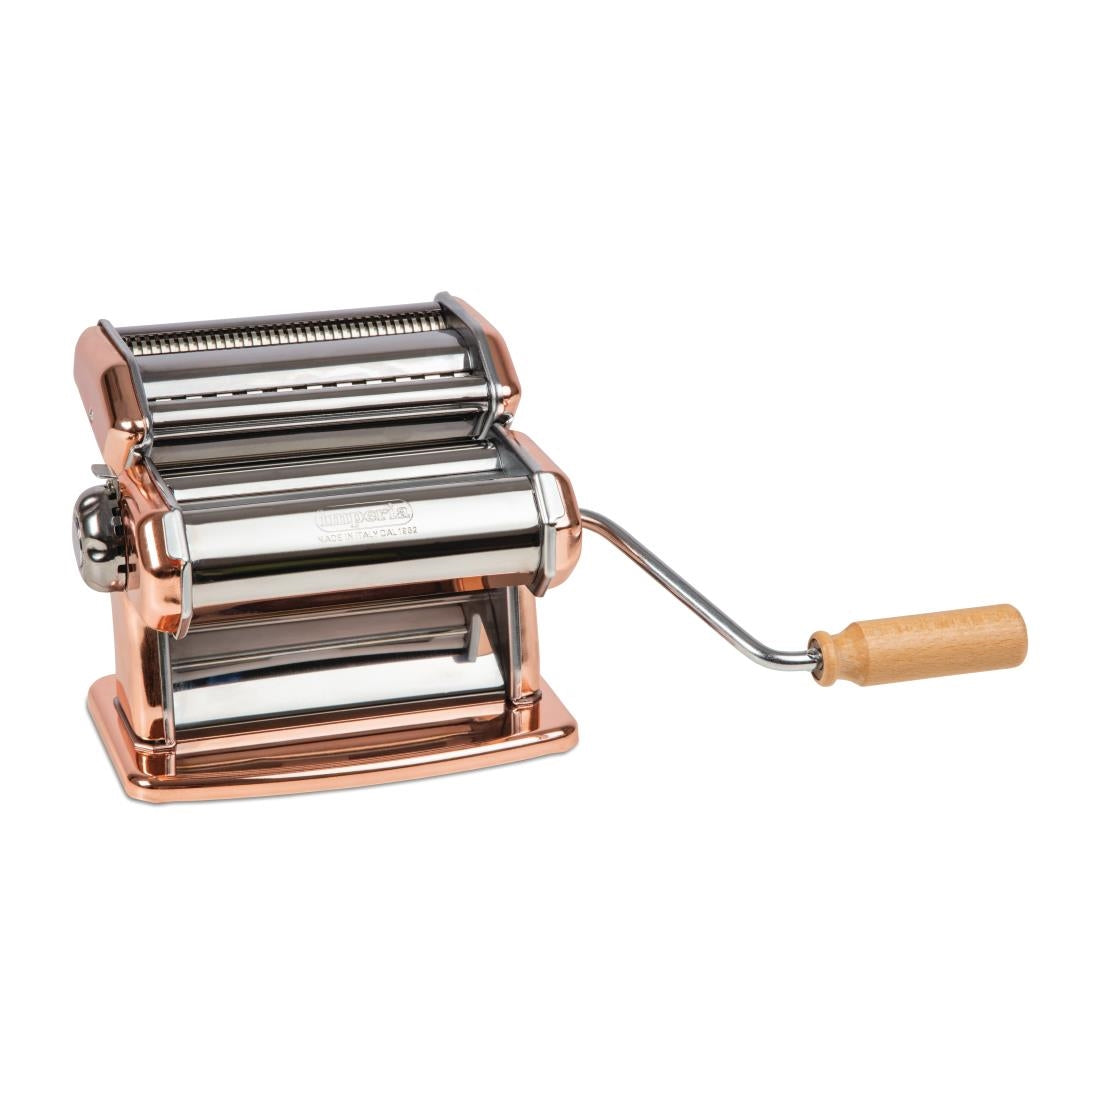 DA427 Imperial Manual Pasta Machine Copper